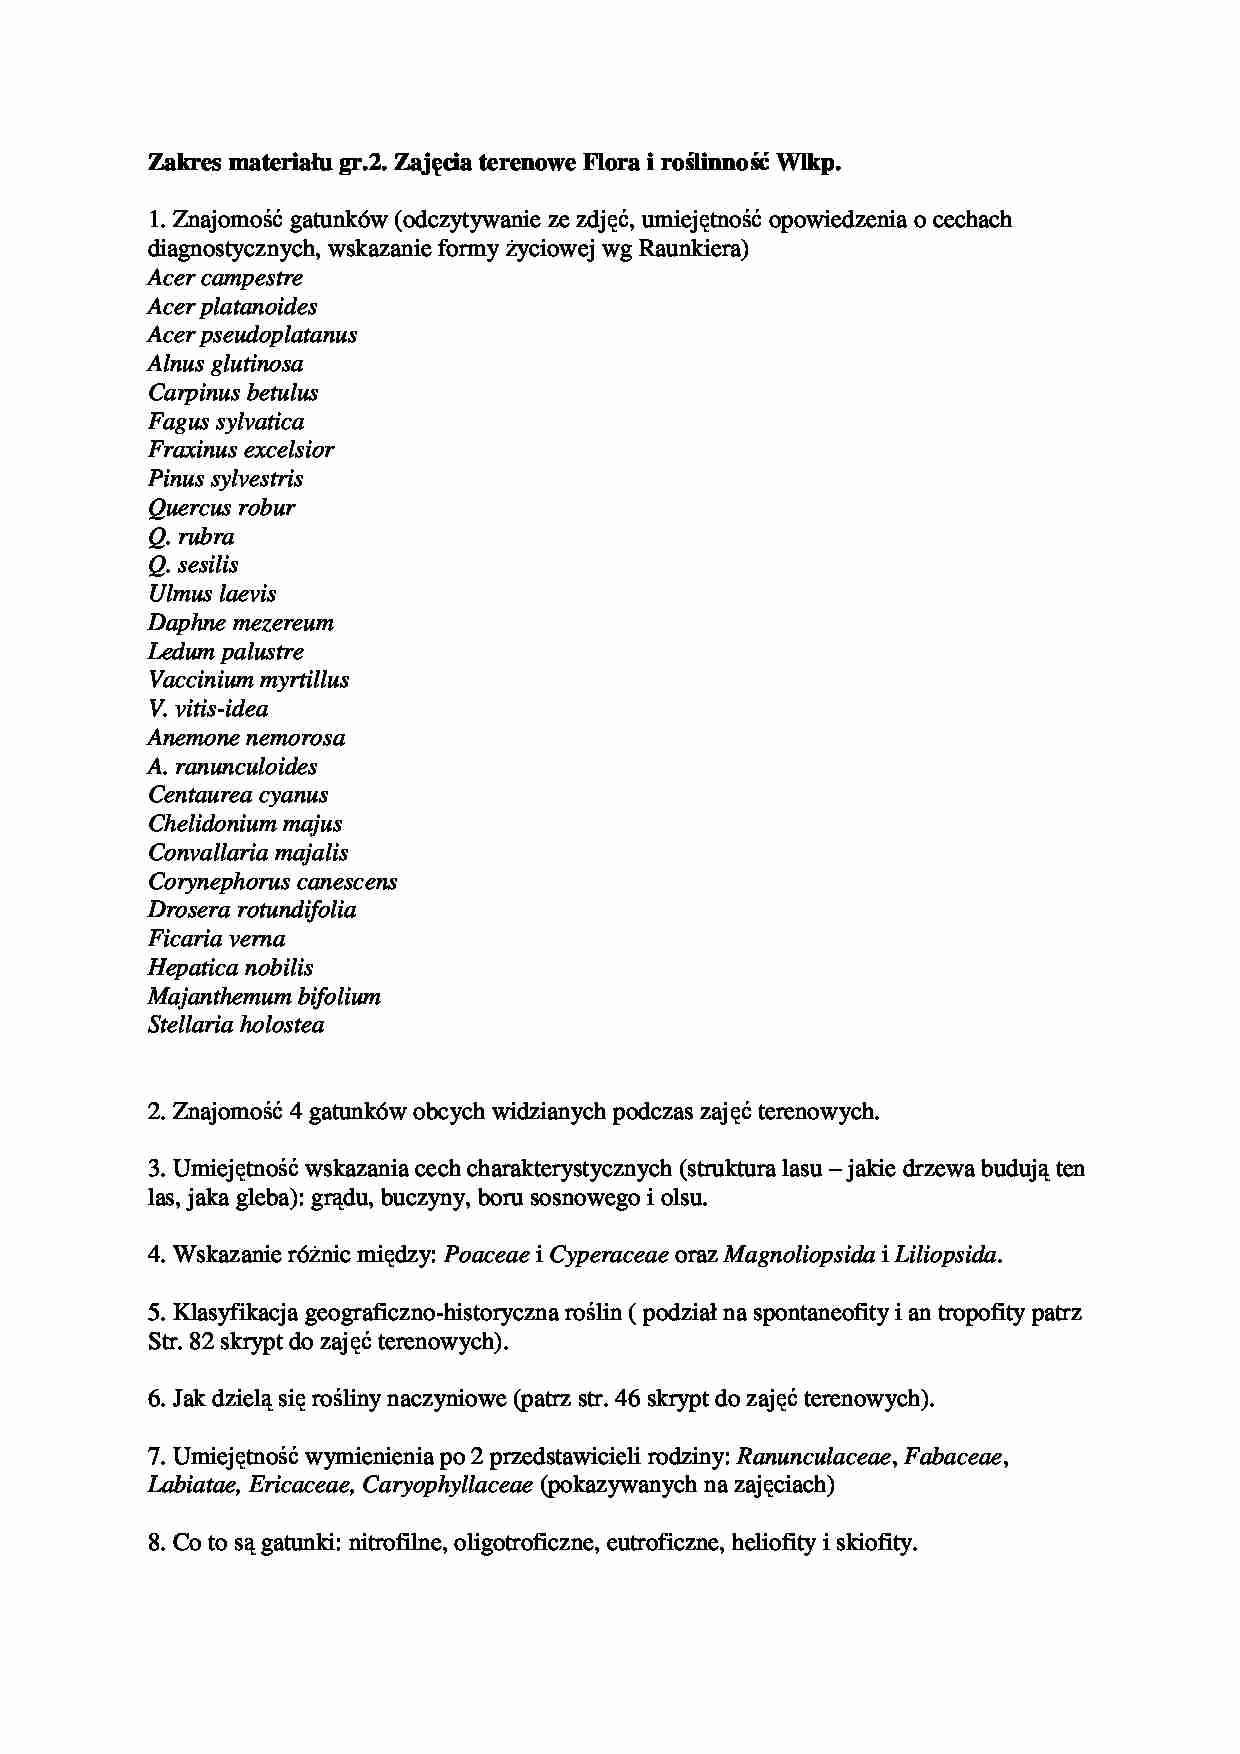 Zakres materiału - Flora i roślinność Wielkopolski - strona 1